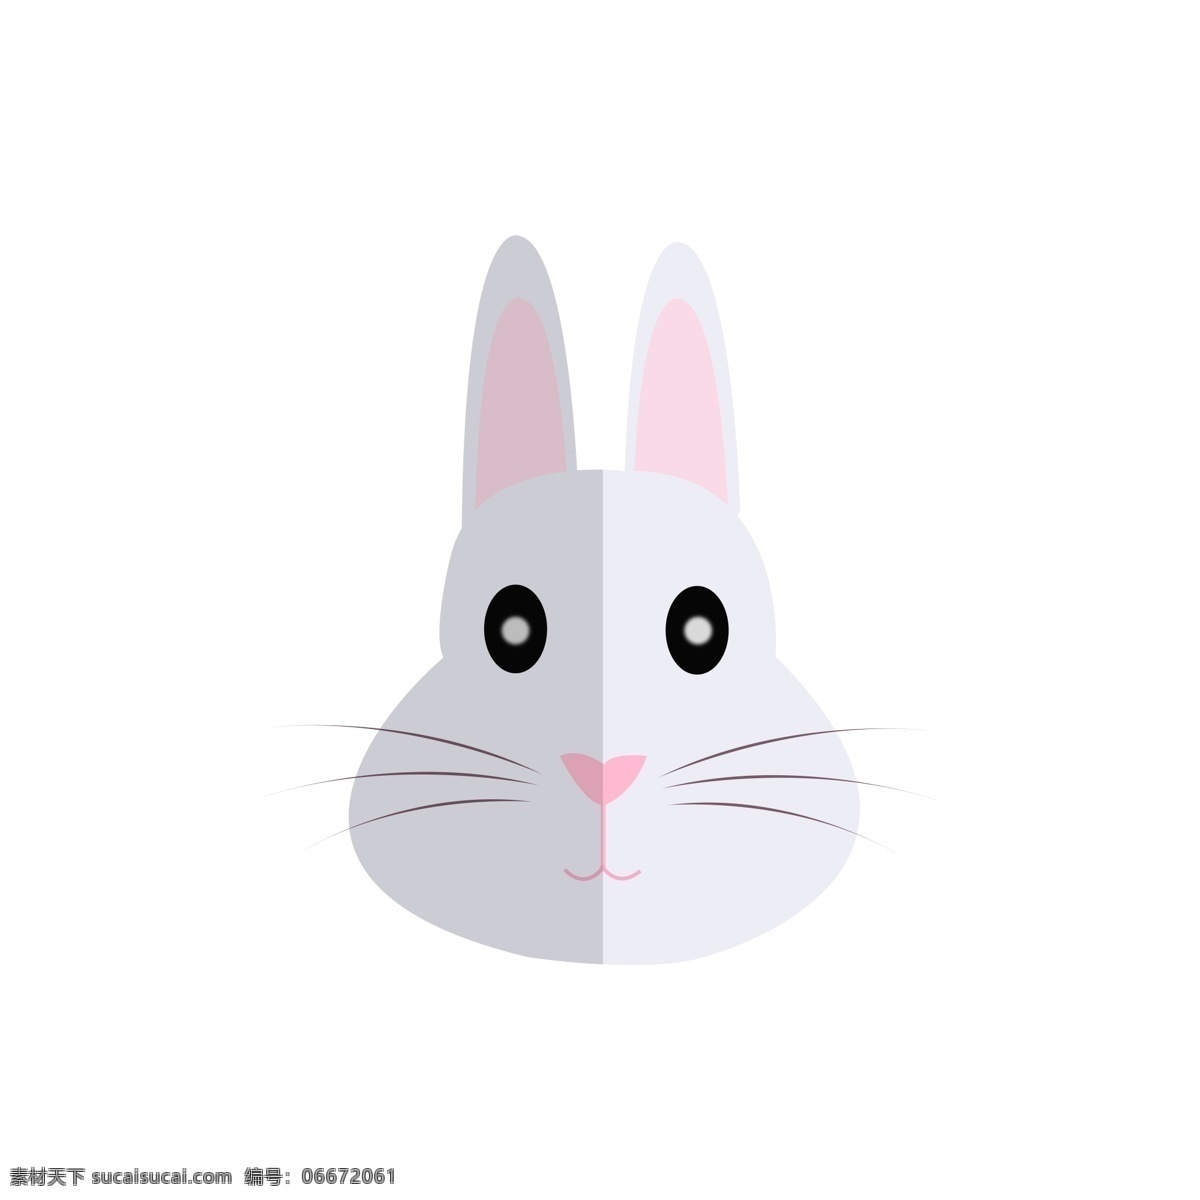 十二生肖 小 兔子 卡通 可爱 头像 小兔子 可爱头像 卡通头像 兔子头像 兔子图标 动物头像